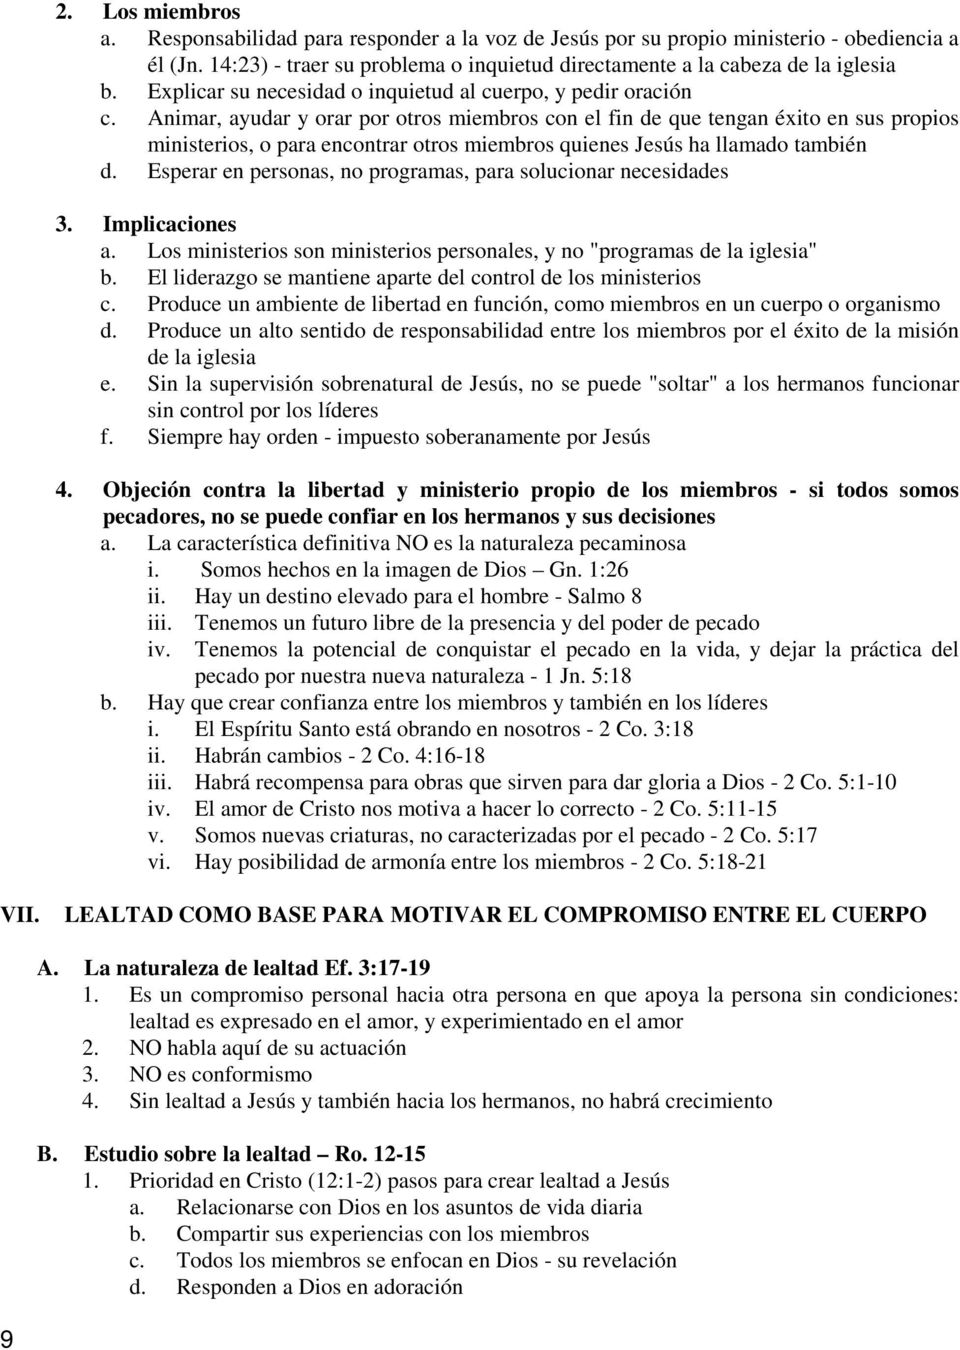 ADMINISTRACIÓN DE LA IGLESIA - PDF Free Download